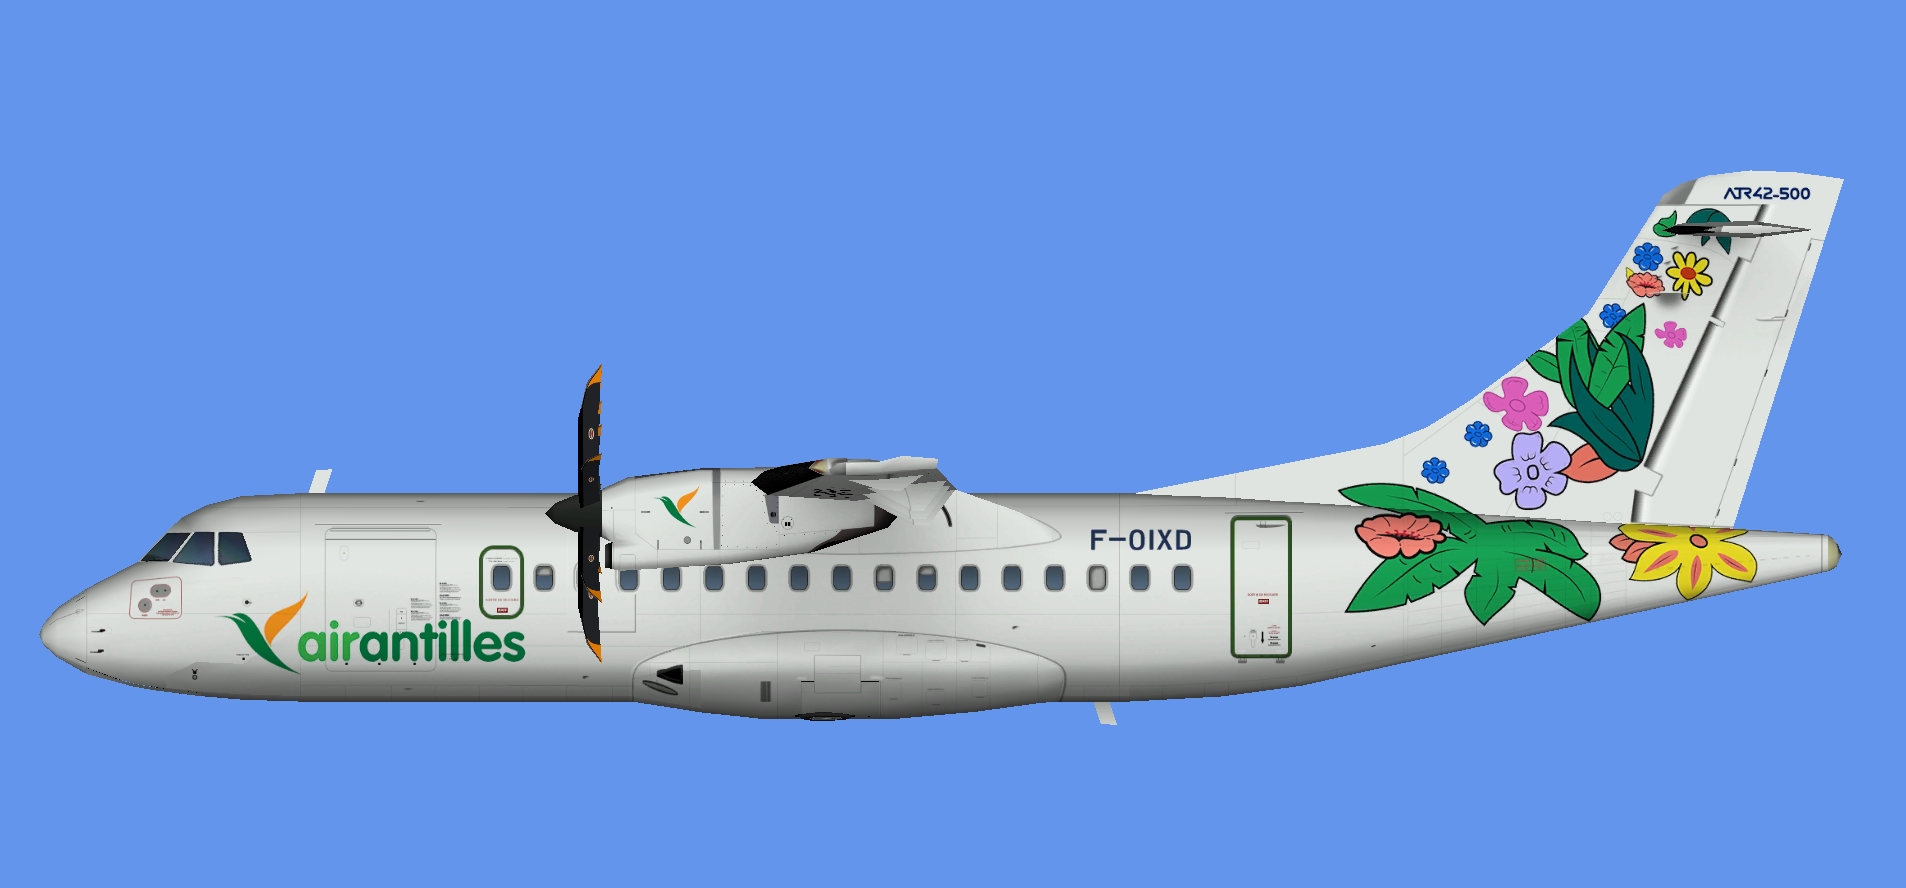 Air Antilles Express ATR 42-500